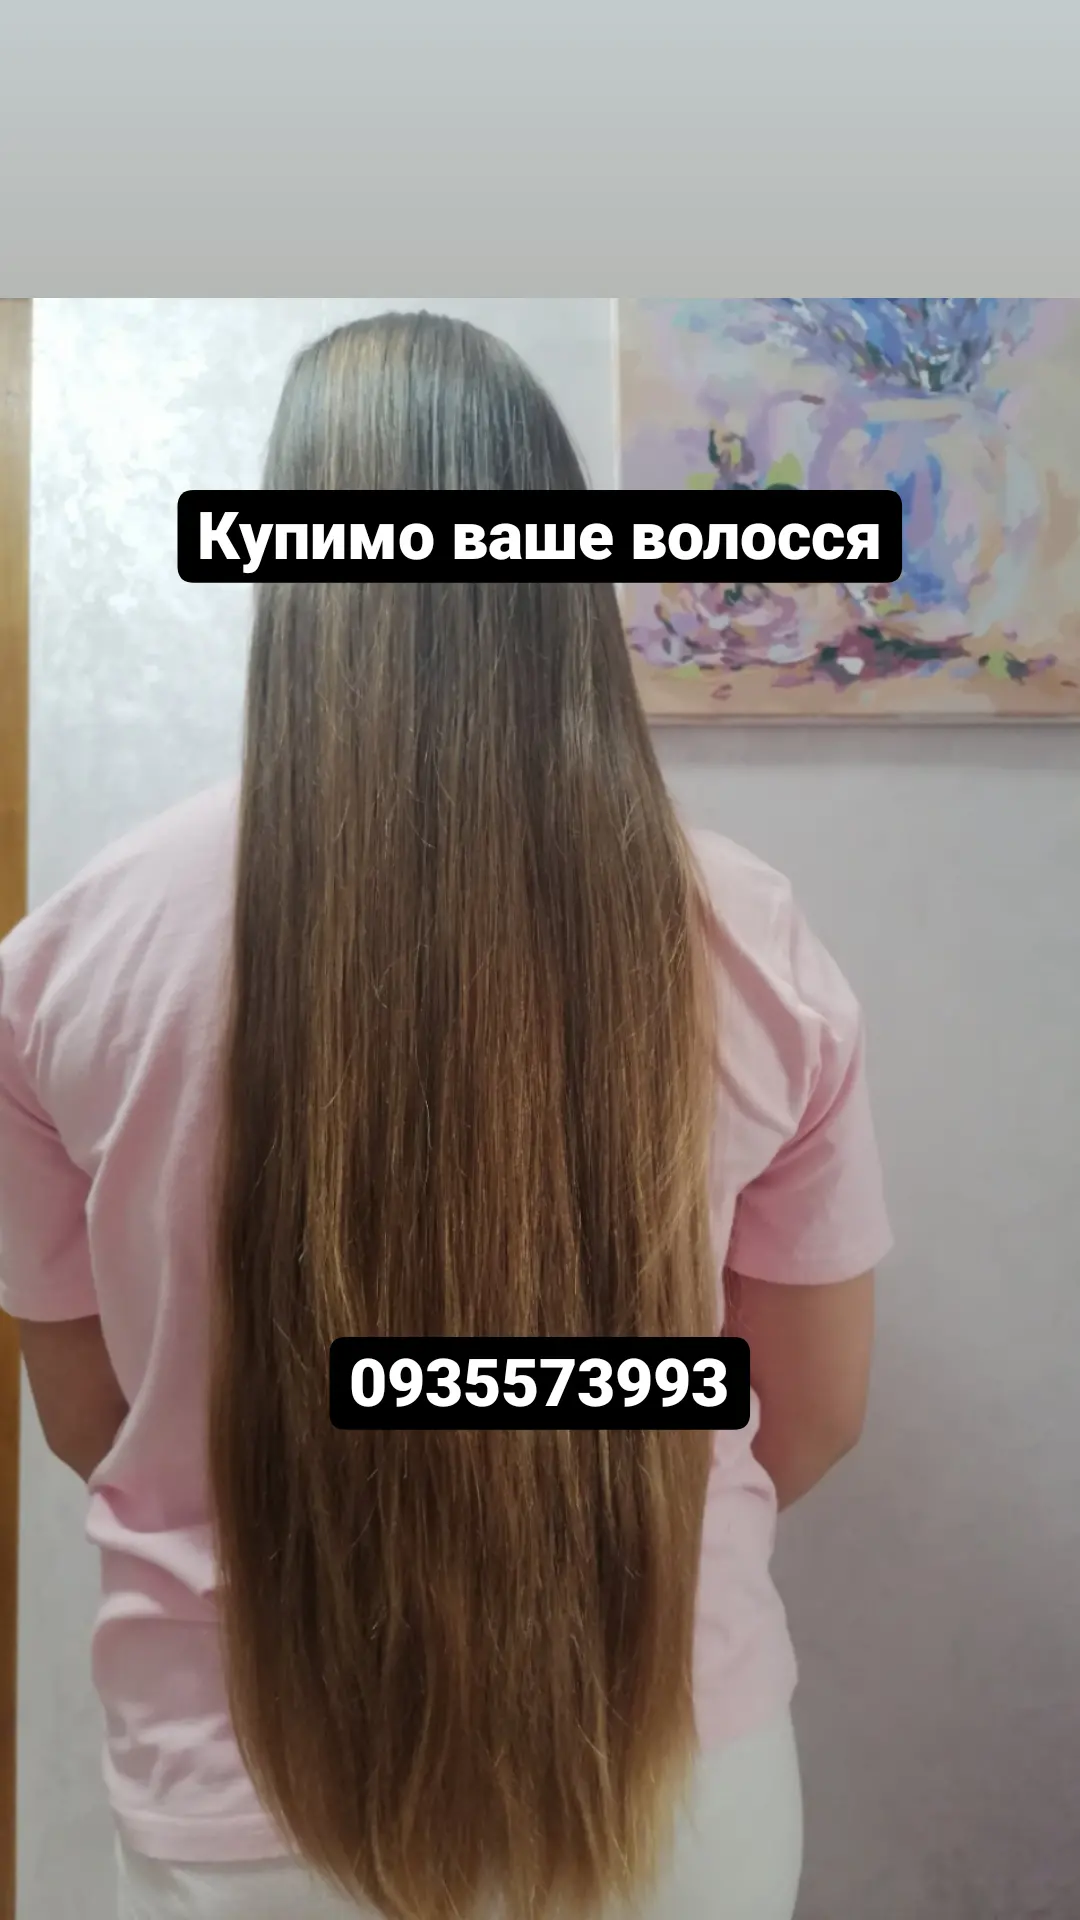 Продати волосся, продать волос - изображение 1